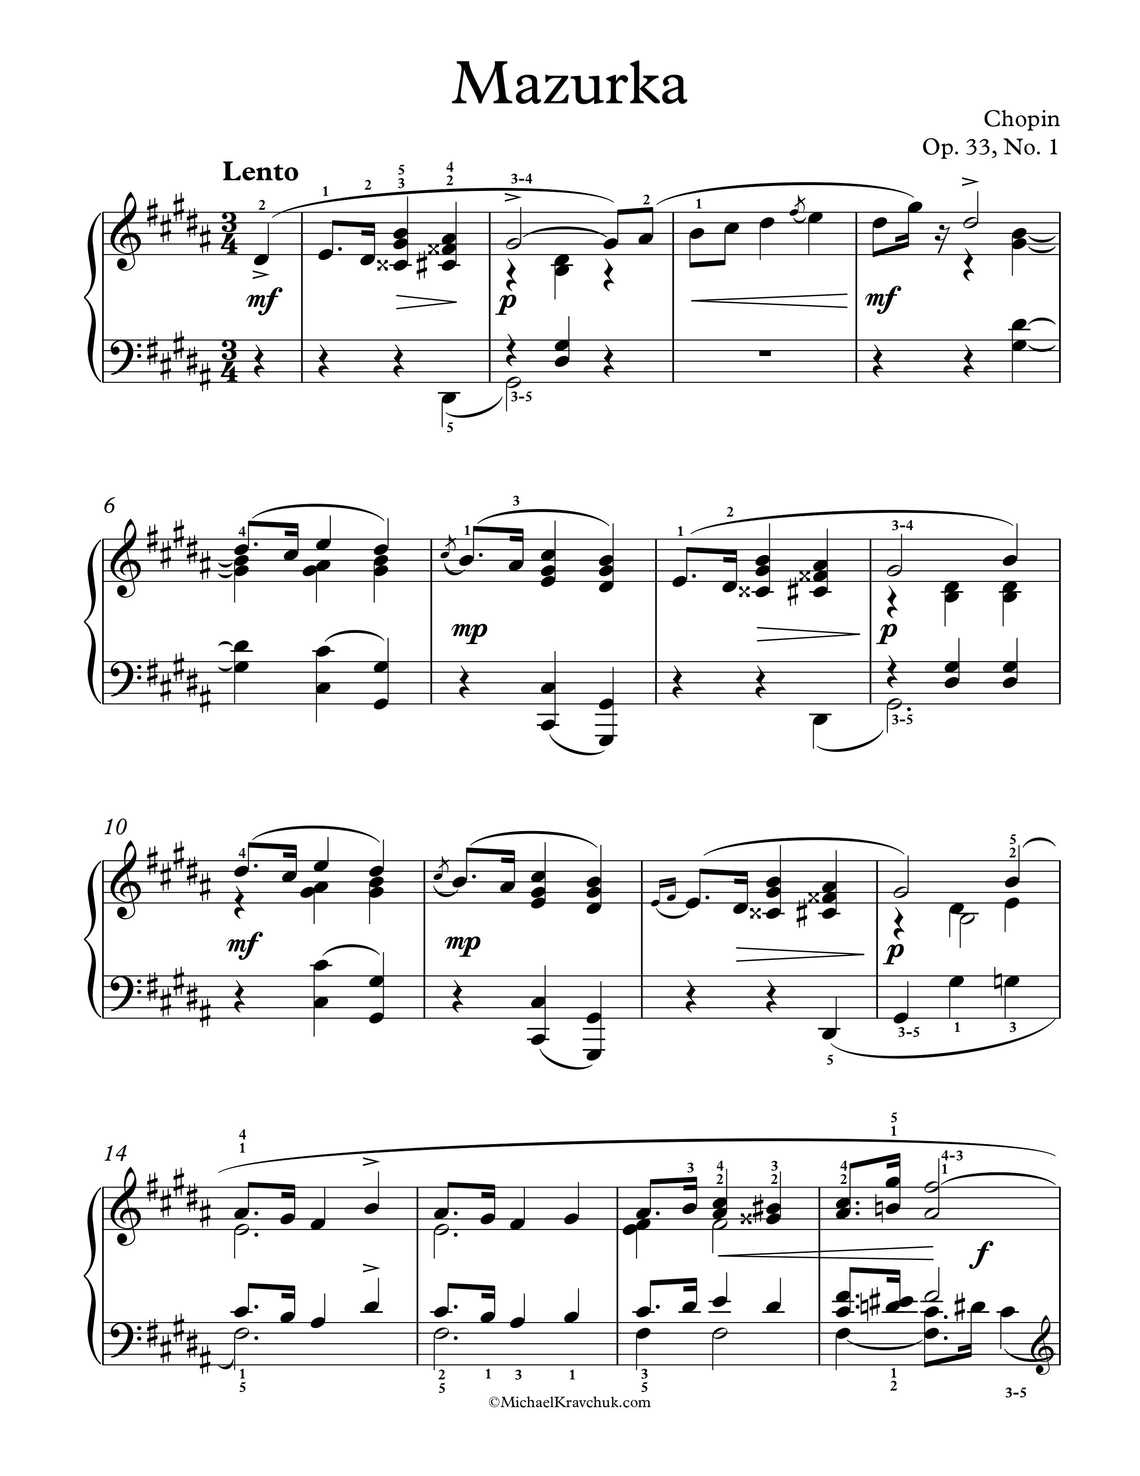 Free Piano Sheet Music - Mazurka Op. 33, No. 1 - Chopin